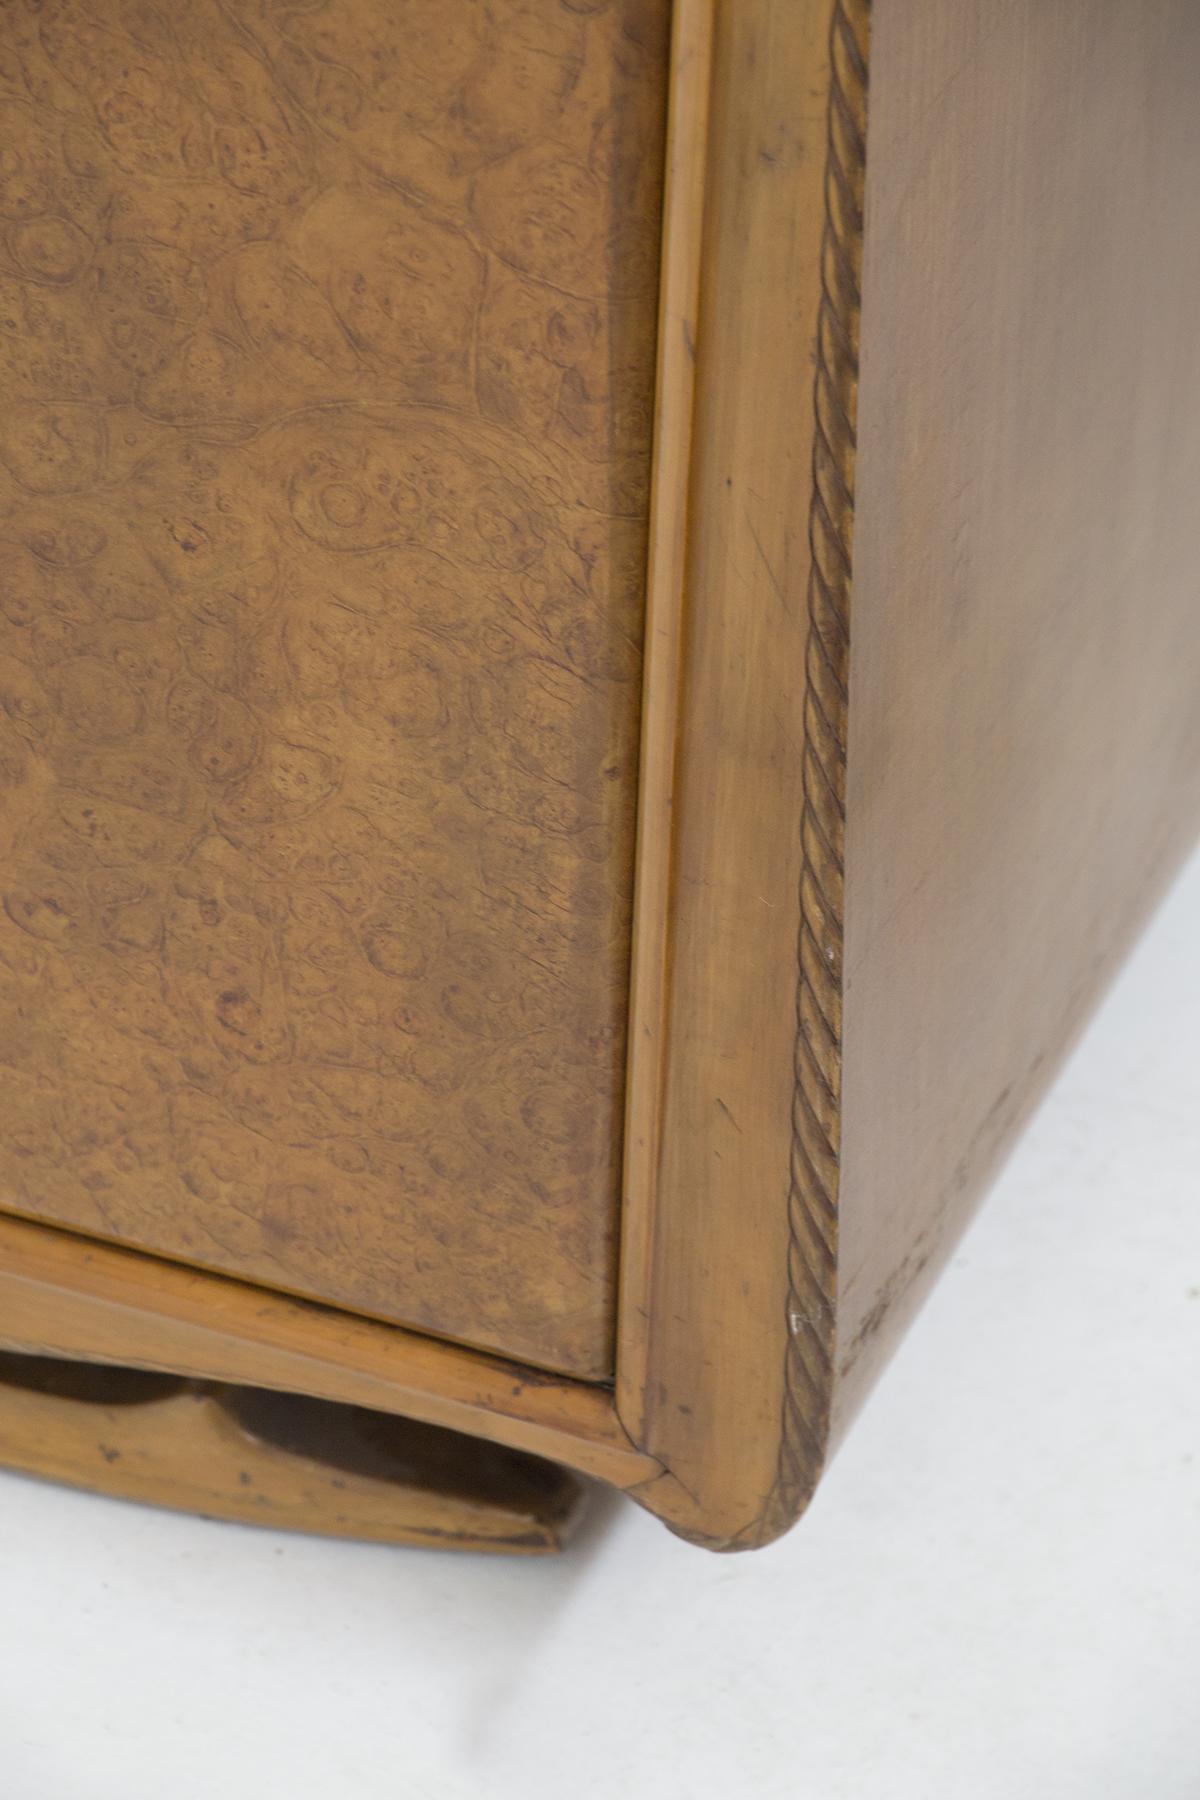 Charmante armoire vintage en bois à 6 portes conçue dans les années 1950 par le grand designer Paolo Buffa, belle fabrication italienne.
L'armoire est entièrement réalisée dans un cadre en bois fin de couleur claire, de forme rectangulaire. Le